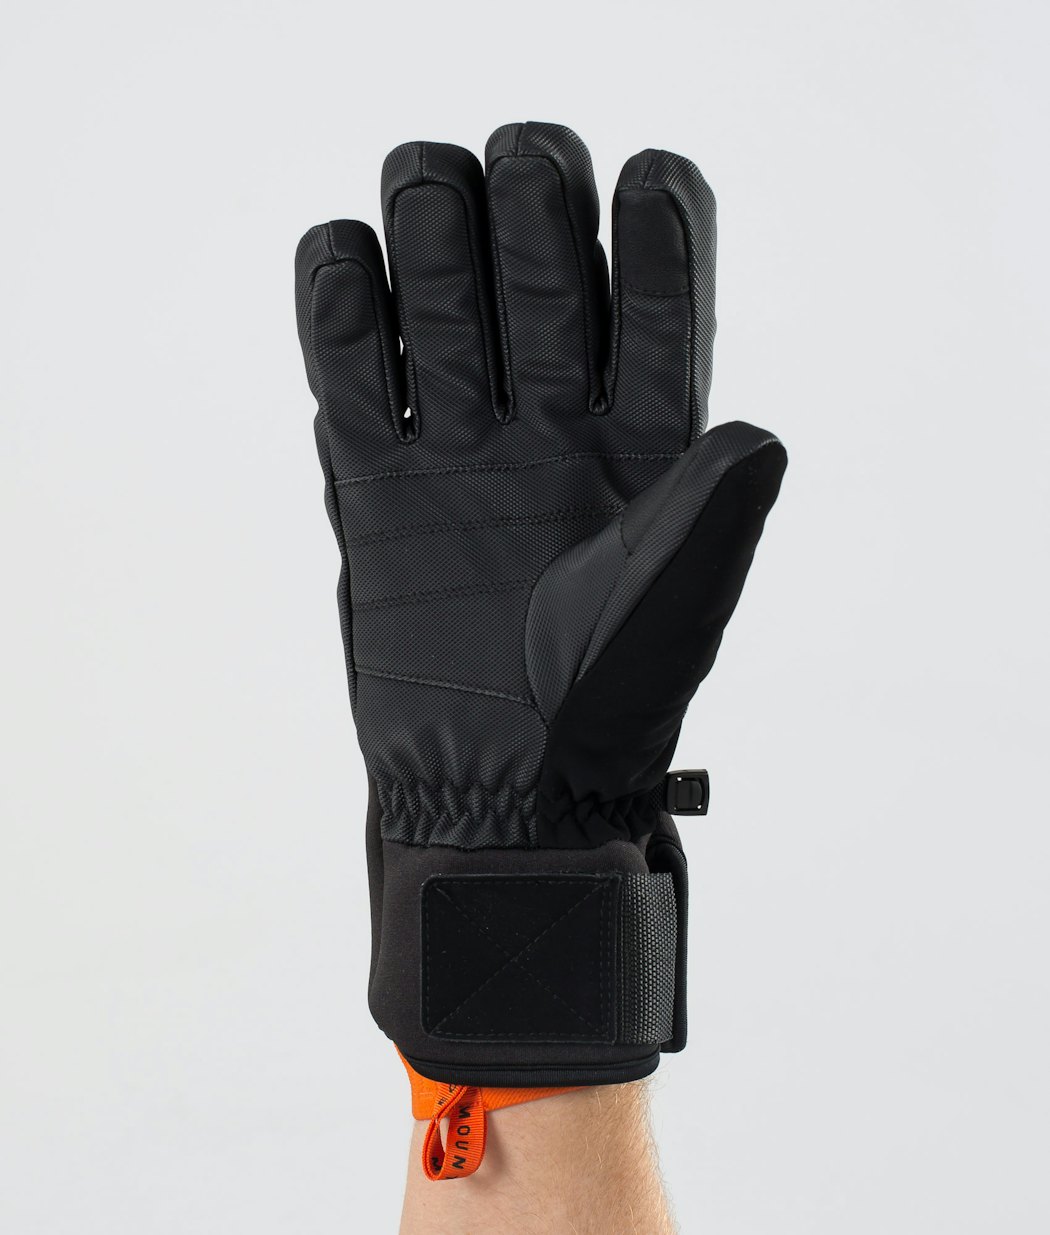 Montec Kilo Men's Ski Gloves Black